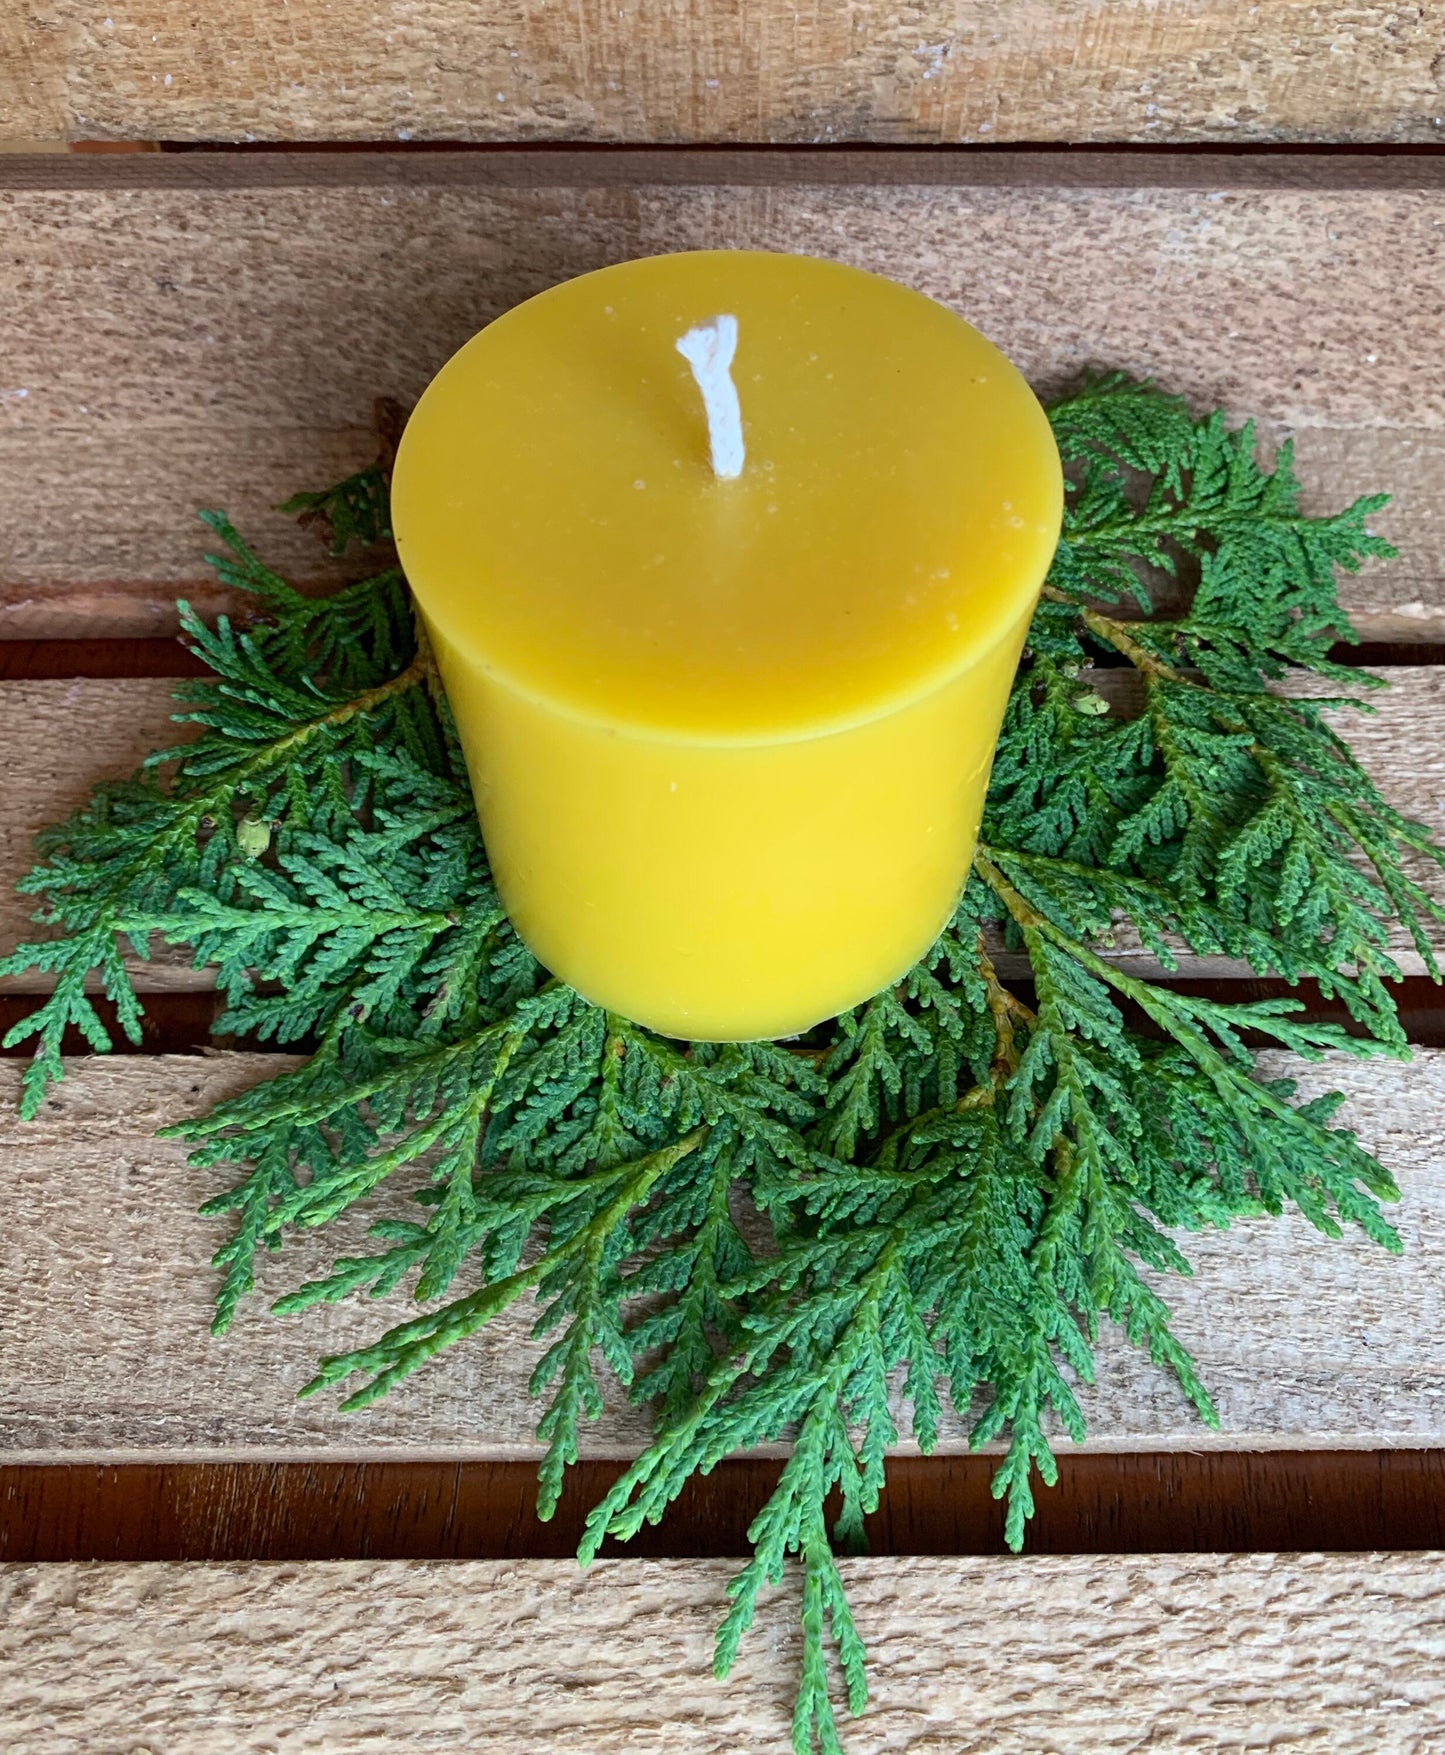 3" x 3" Pillar Candle- Pure Beeswax- Pillar Candle